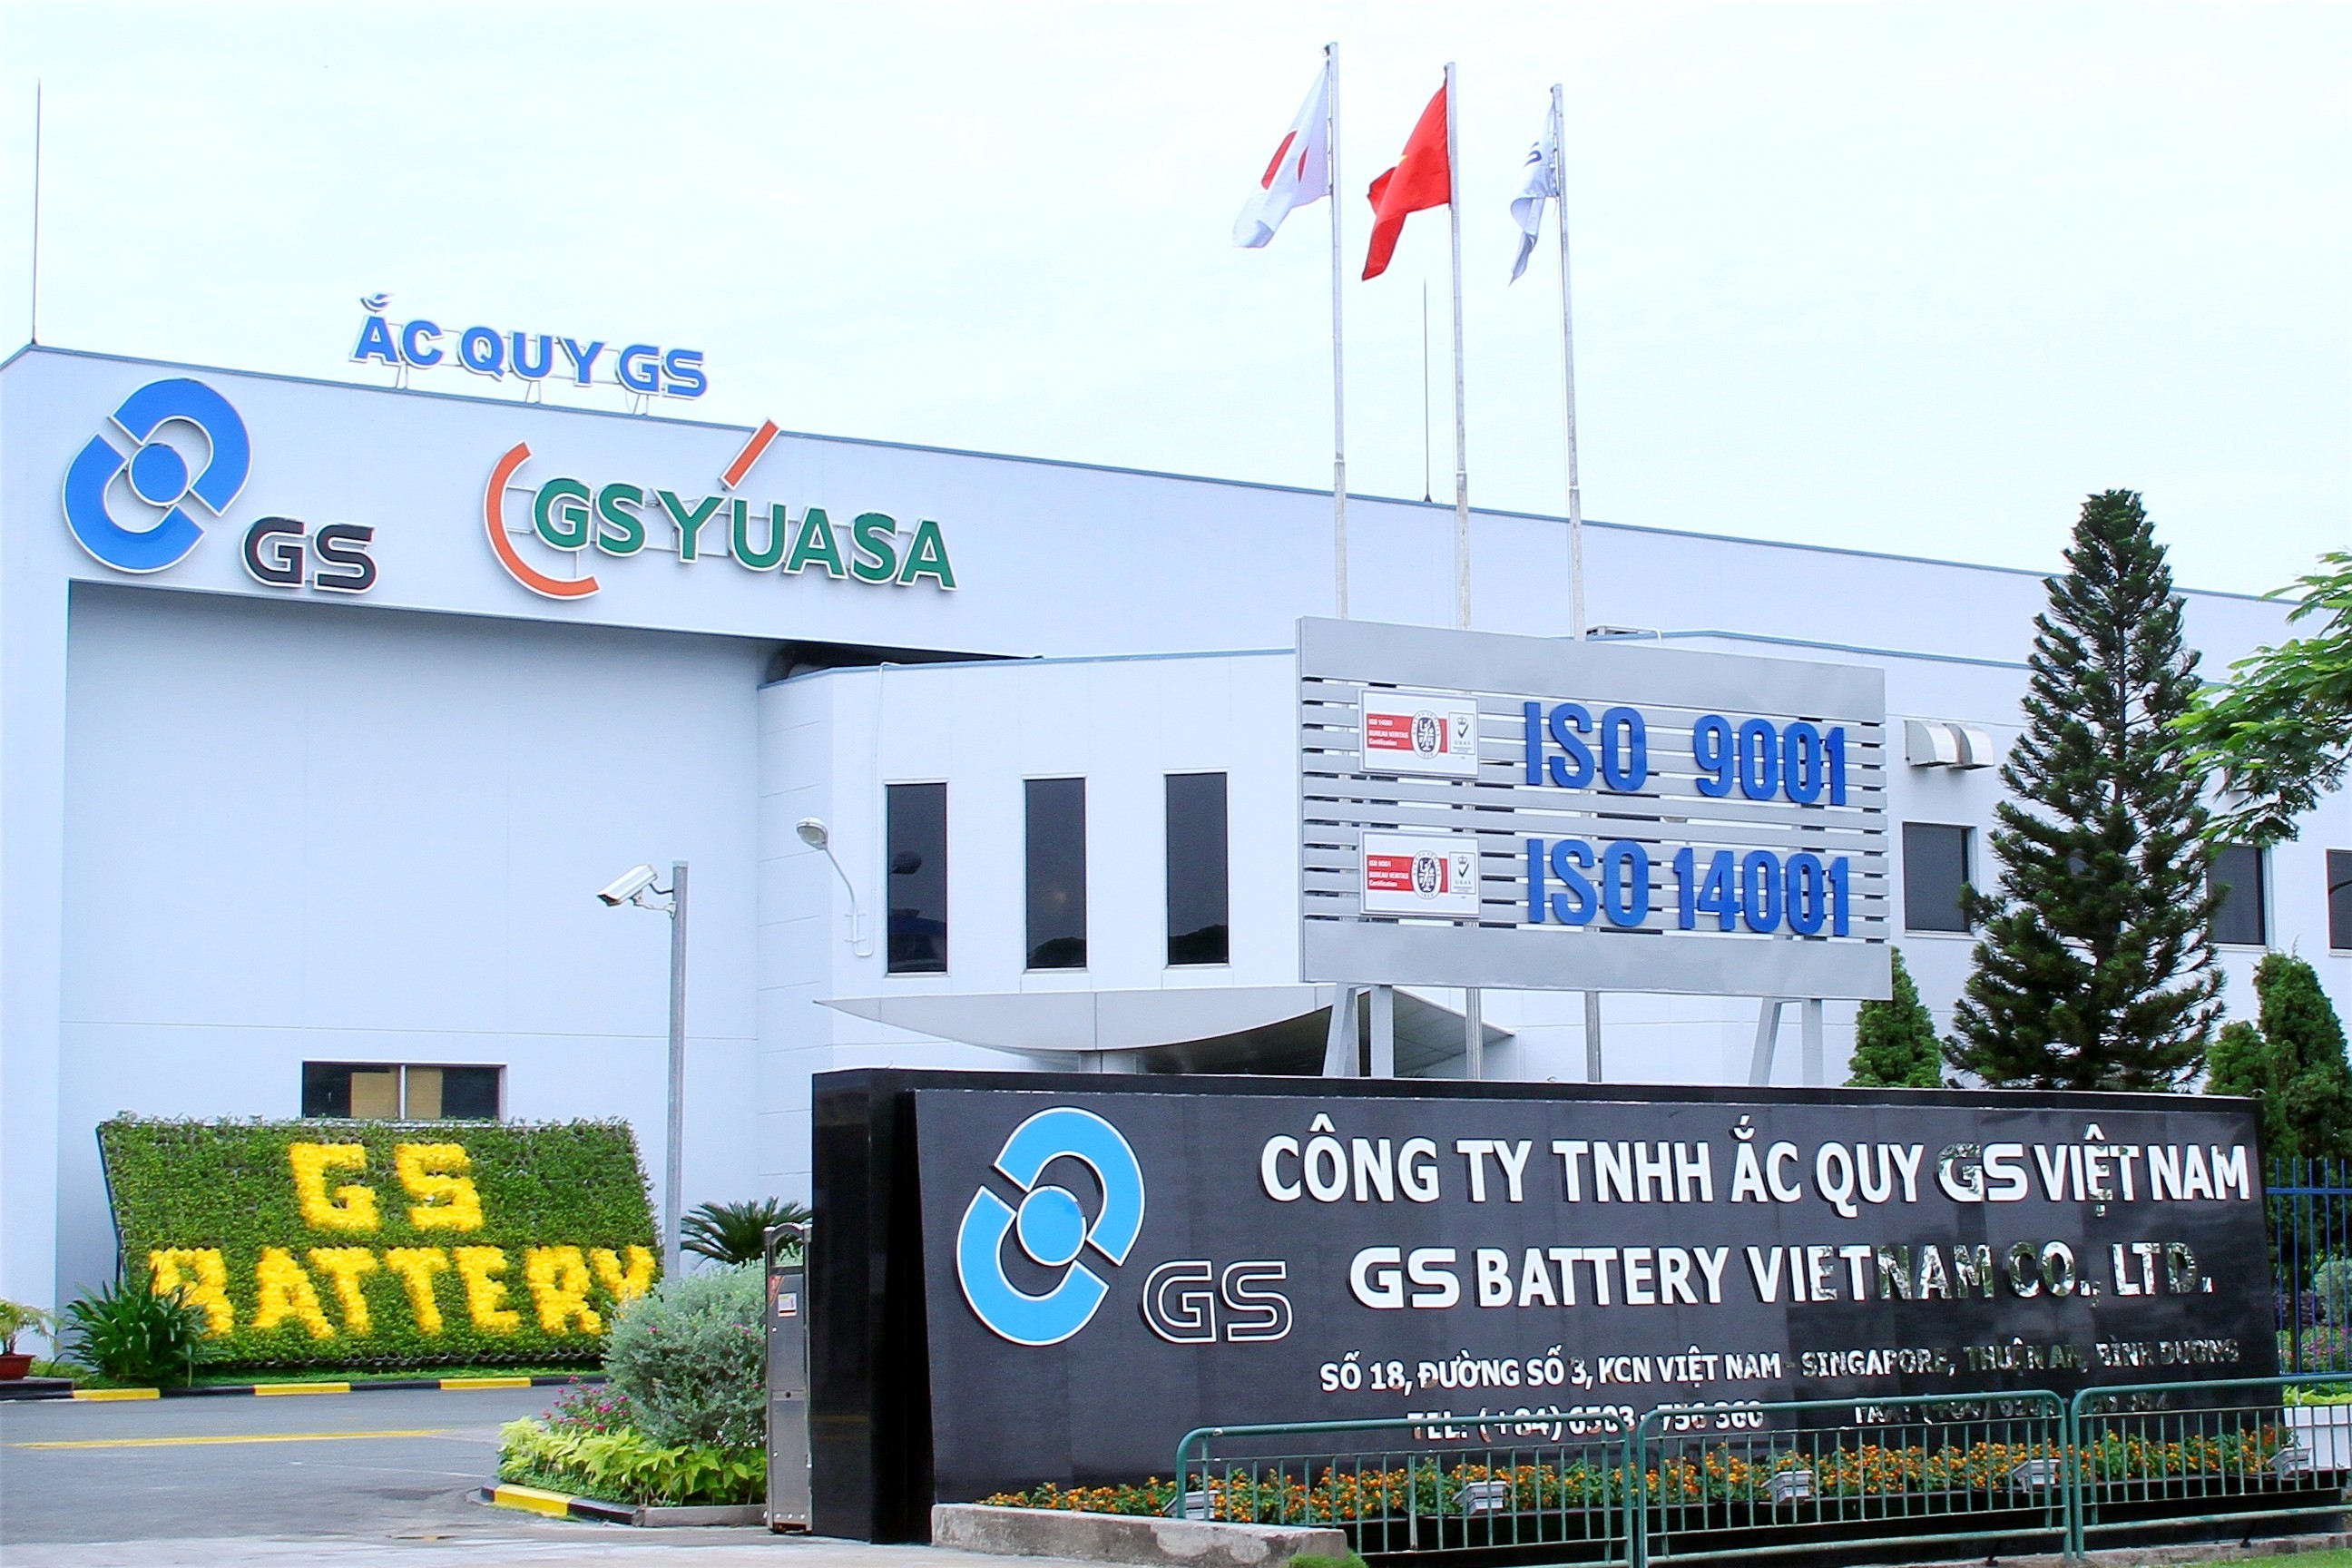 GS Battery Vietnam Co., Ltd. (Công ty TNHH Ắc quy GS Việt Nam)